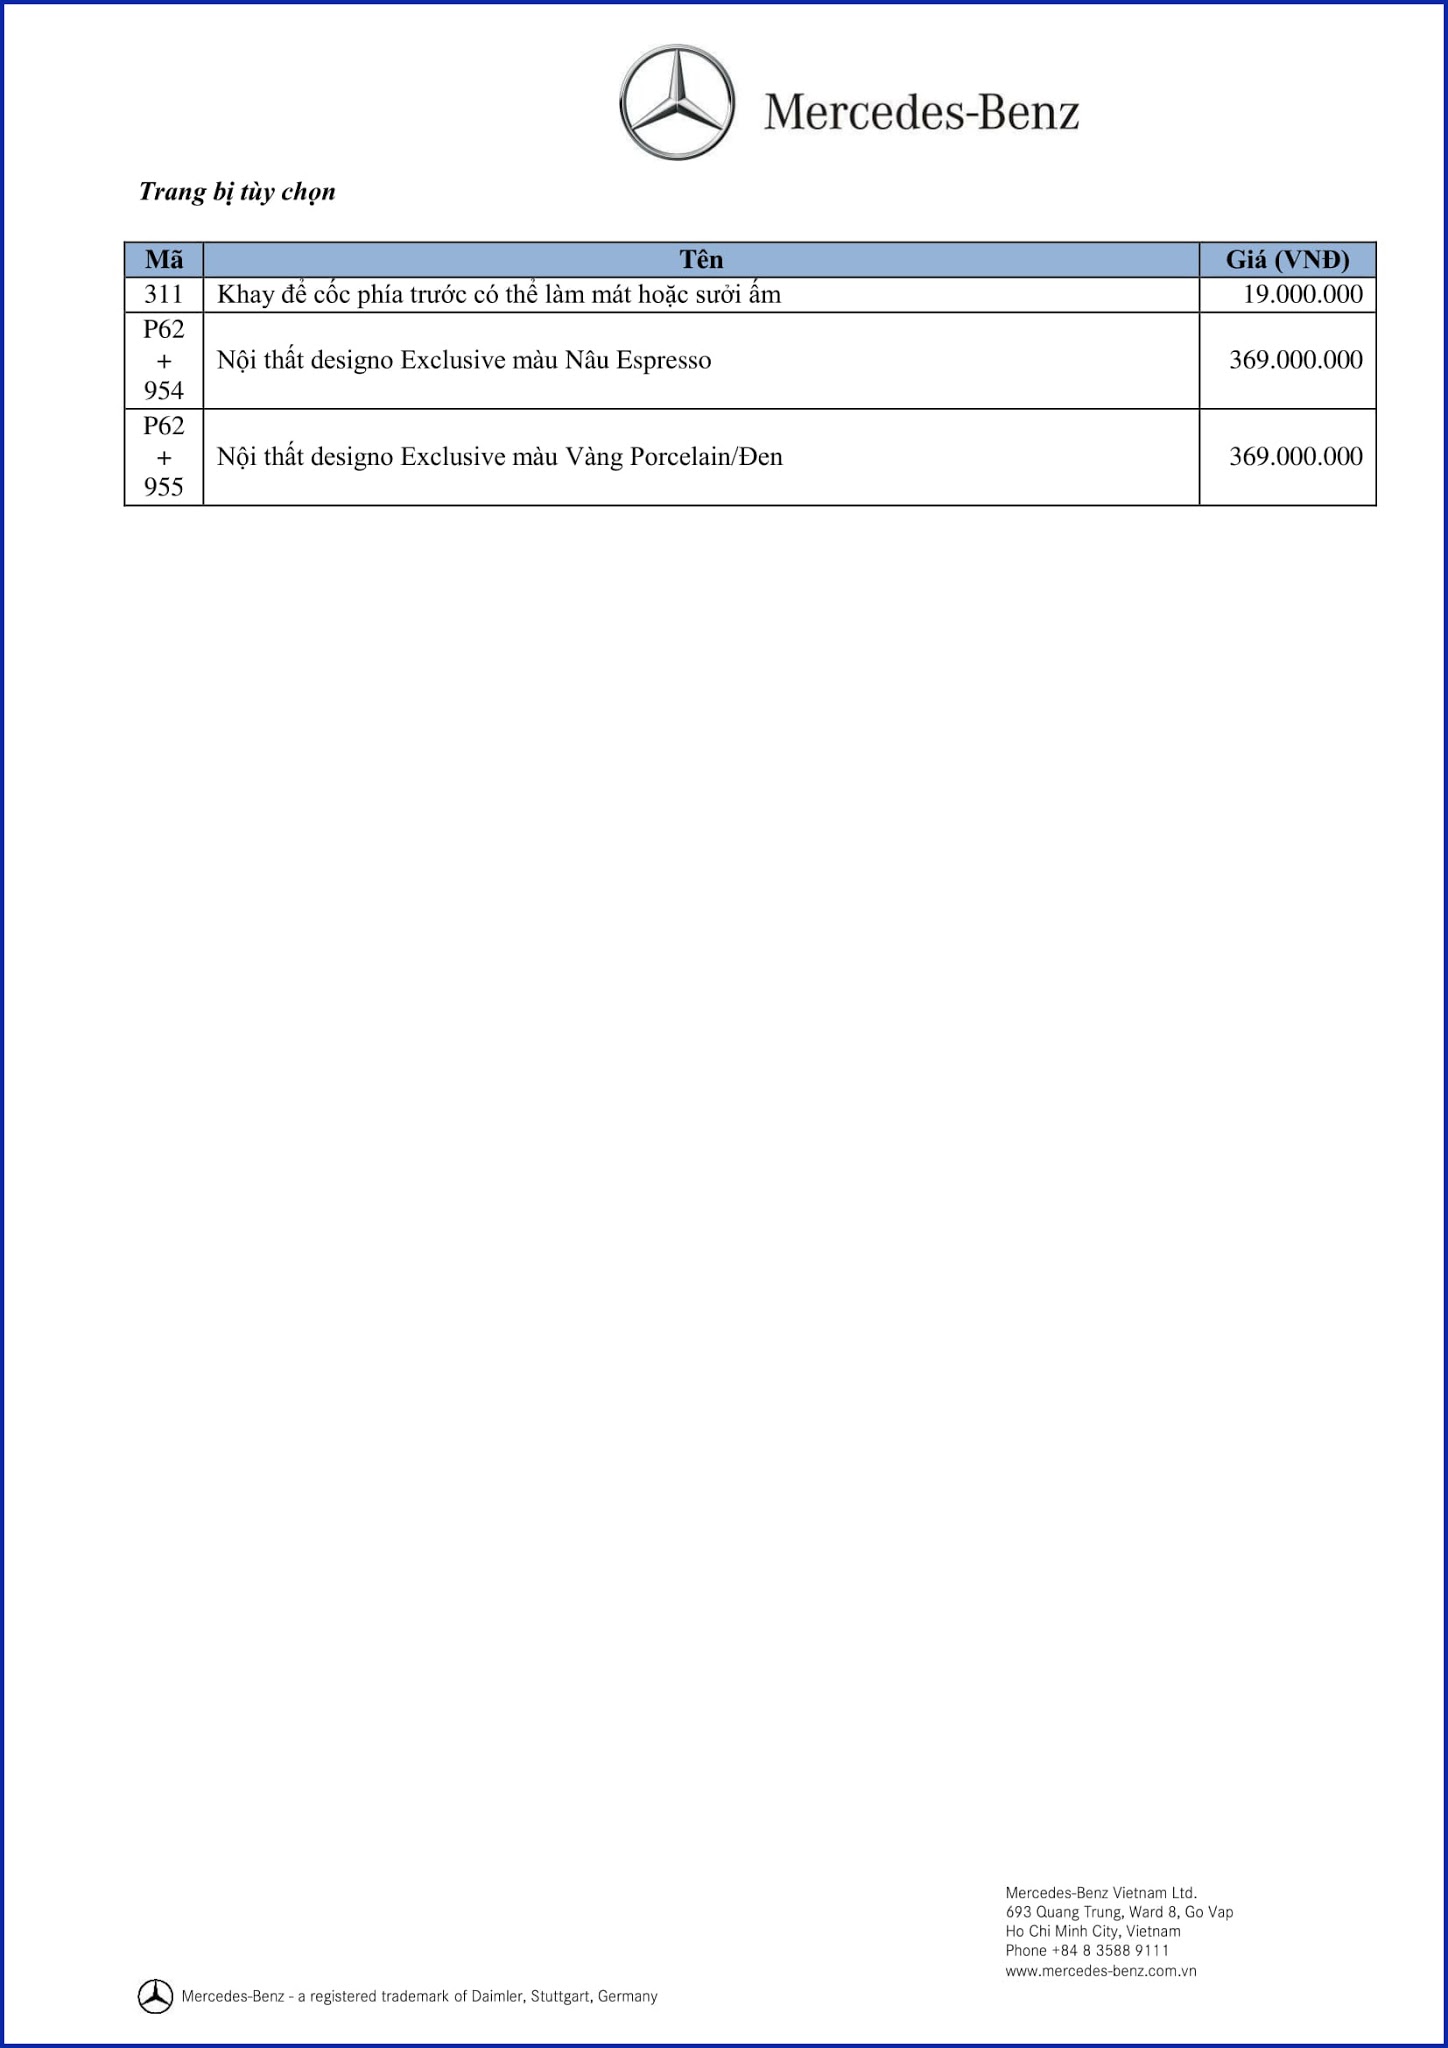 Bảng thông số kỹ thuật Mercedes GLS 500 4MATIC 2018 tại Mercedes Trường Chinh